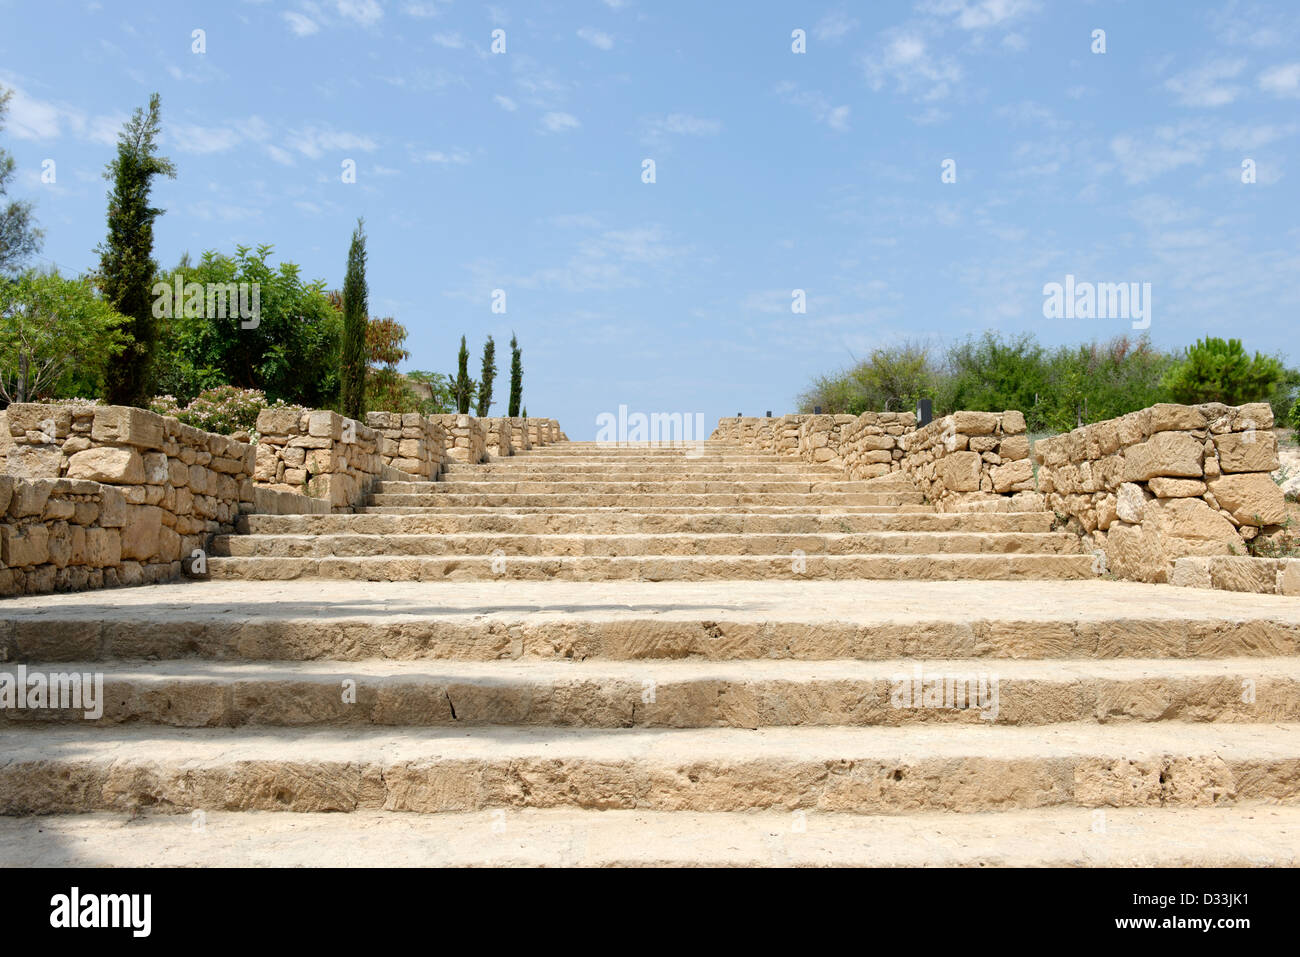 Questa immagine è stata catturata al vasto antico parco archeologico a Paphos (Kato Pafos), Cipro. Foto Stock